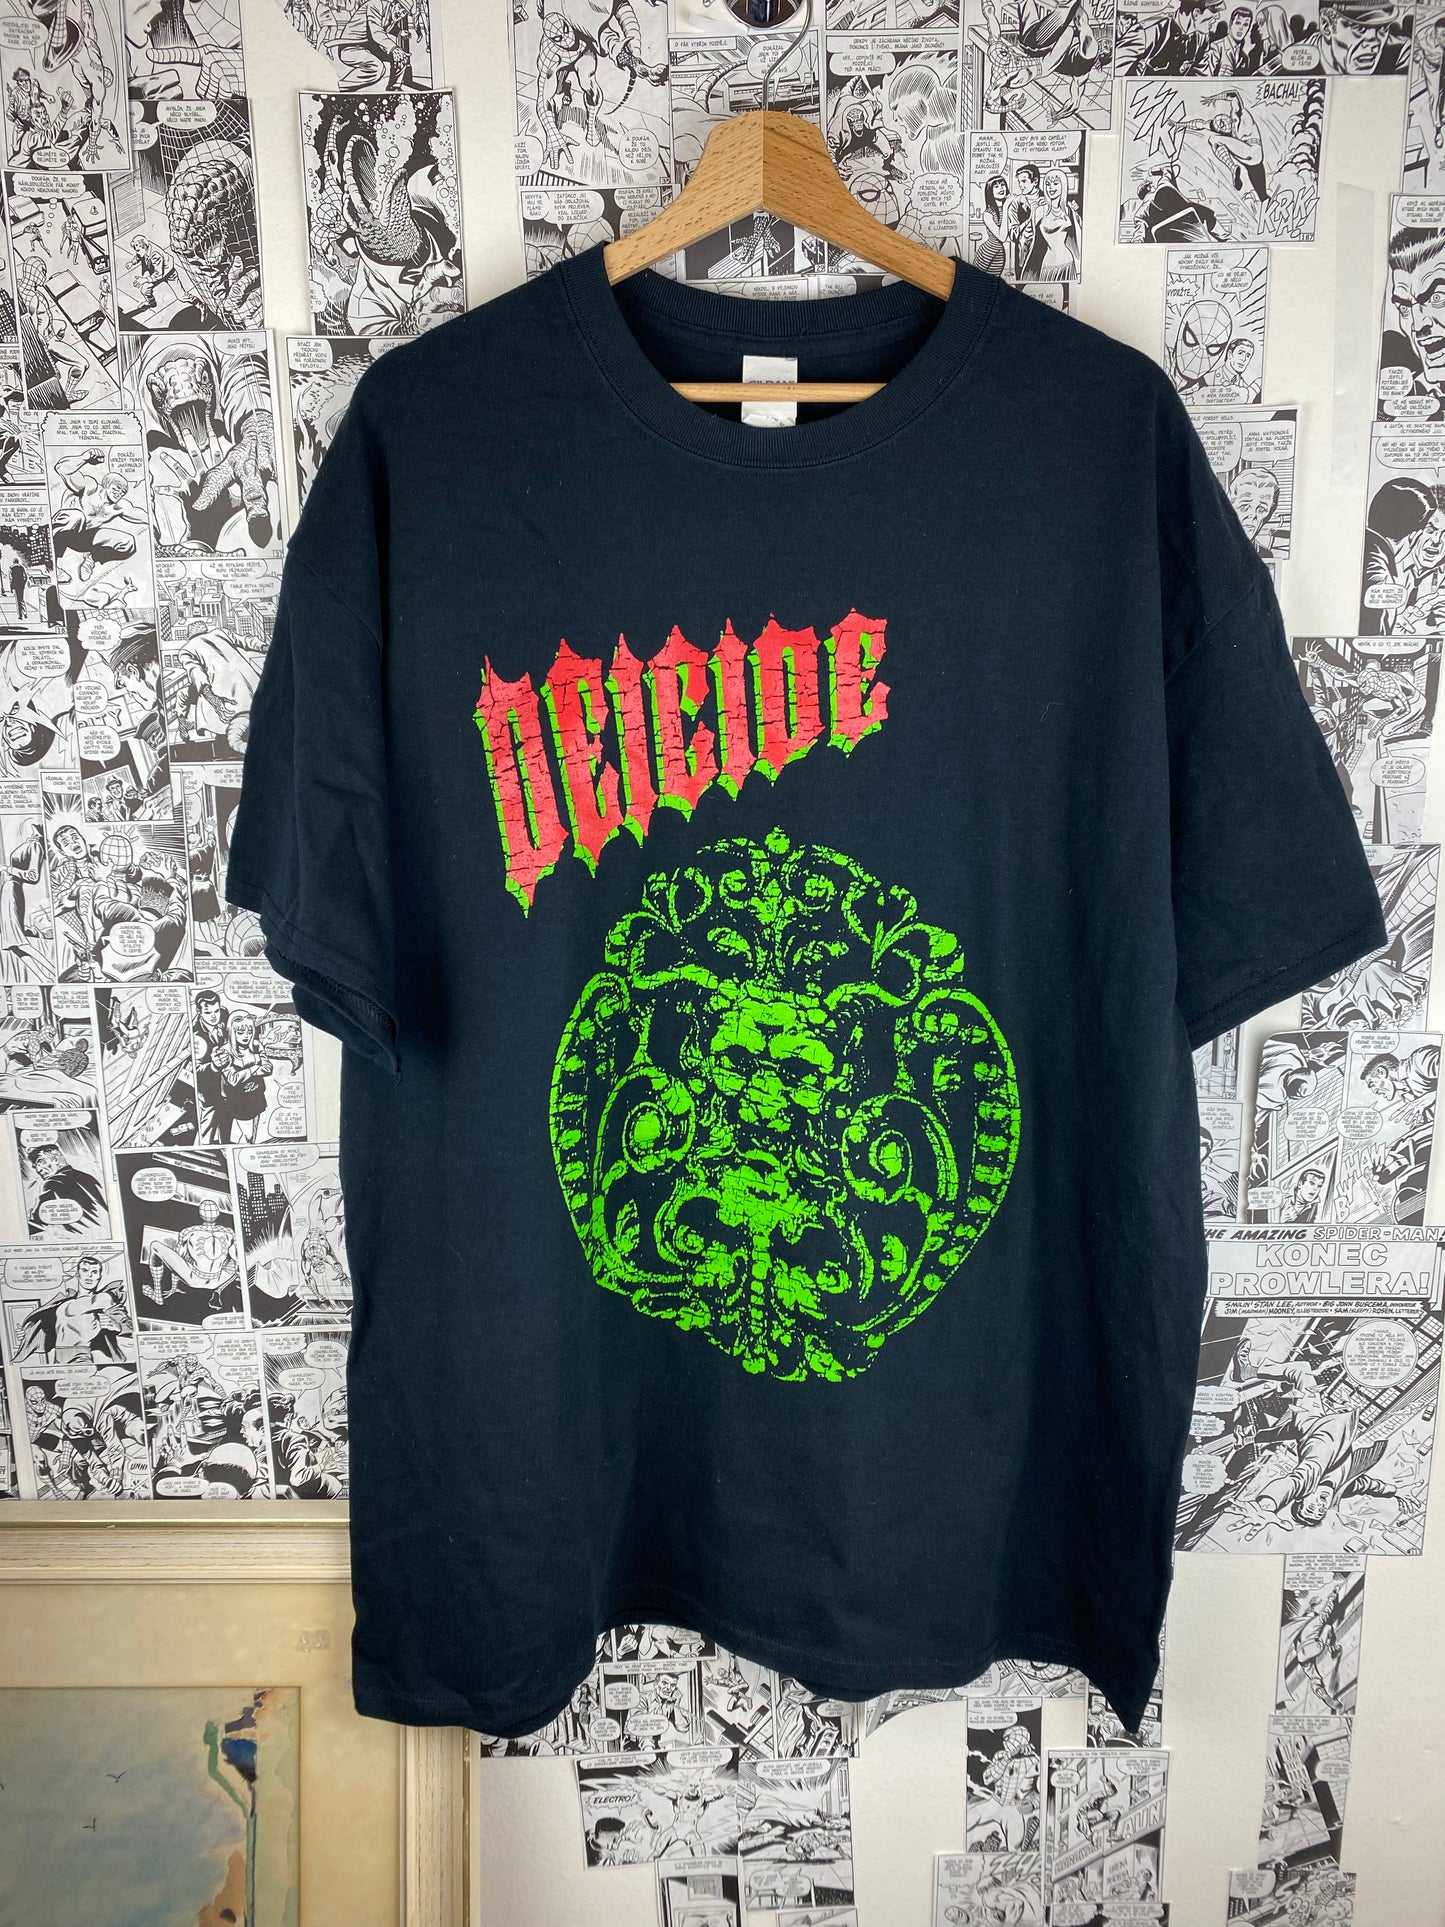 Vintage Deicide 00s t-shirt - size XL